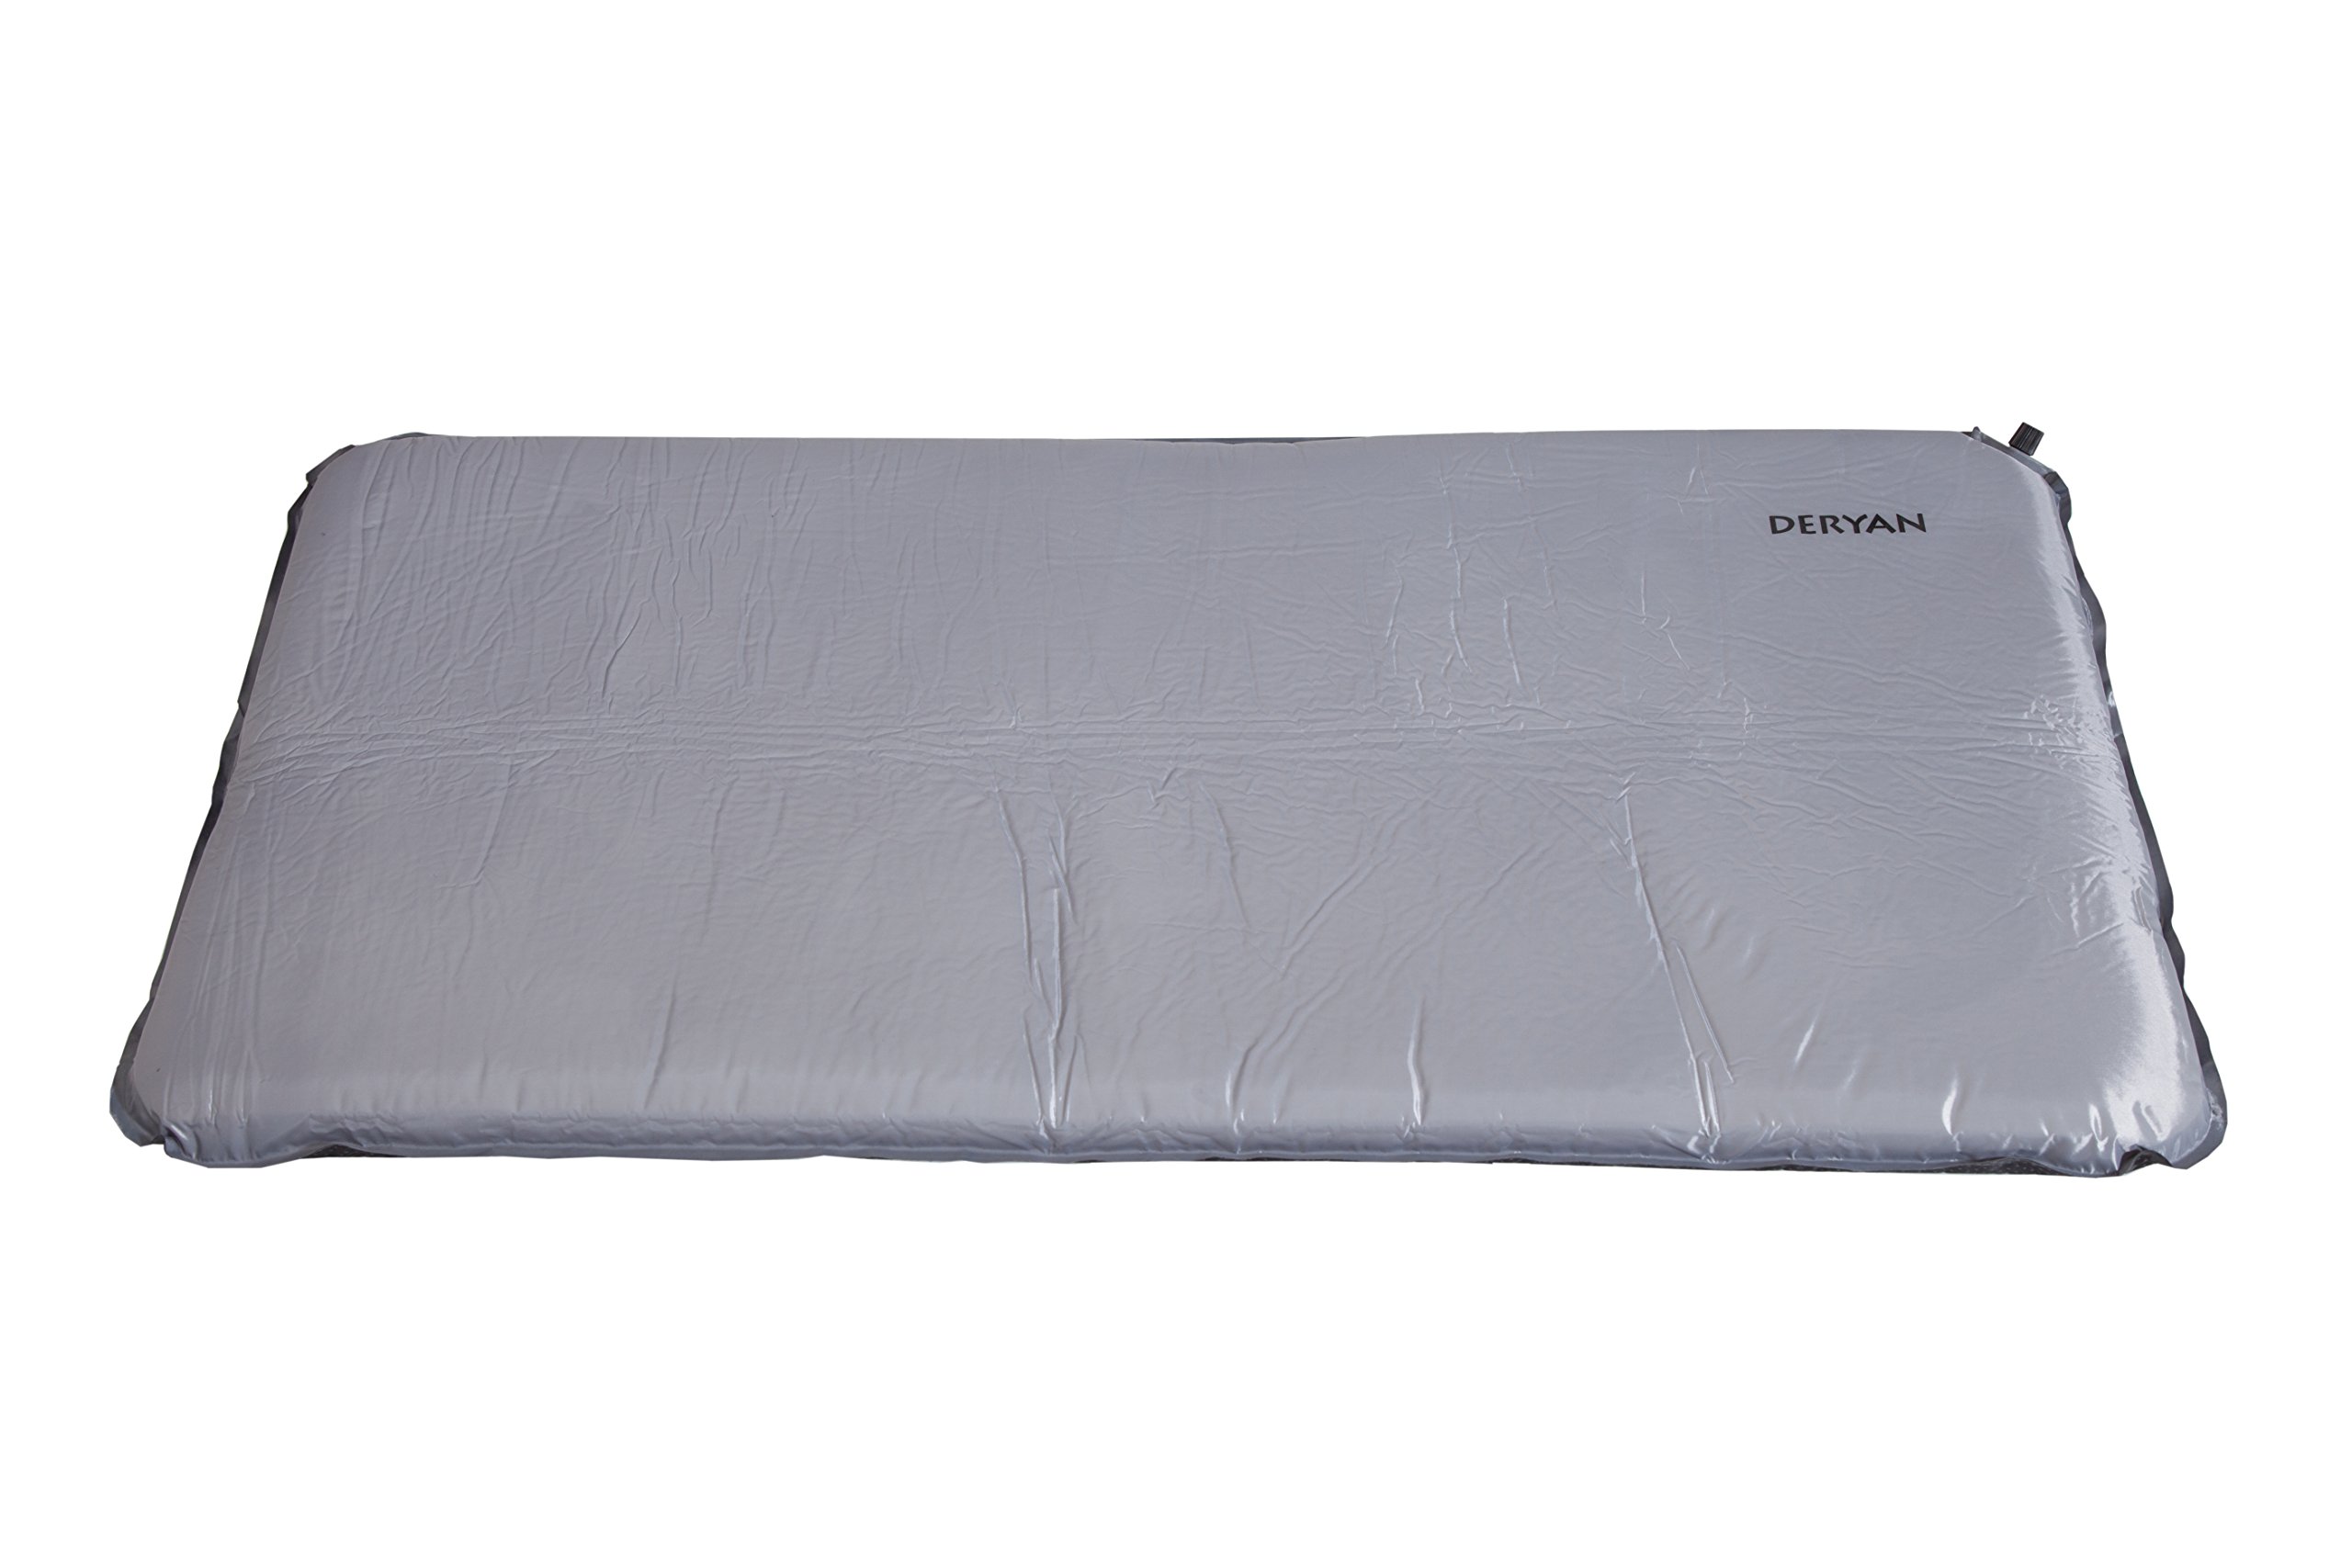 Deryan Selbstaufblasbare Campingbettmatratze - Grey - Unterstützt Ihr Kind - 120x60 cm - Kompakt, Comfortabel und Faltbar - Nur 1 kg - Waschbare Oeko-Tex-zertifizierte Baumwolle